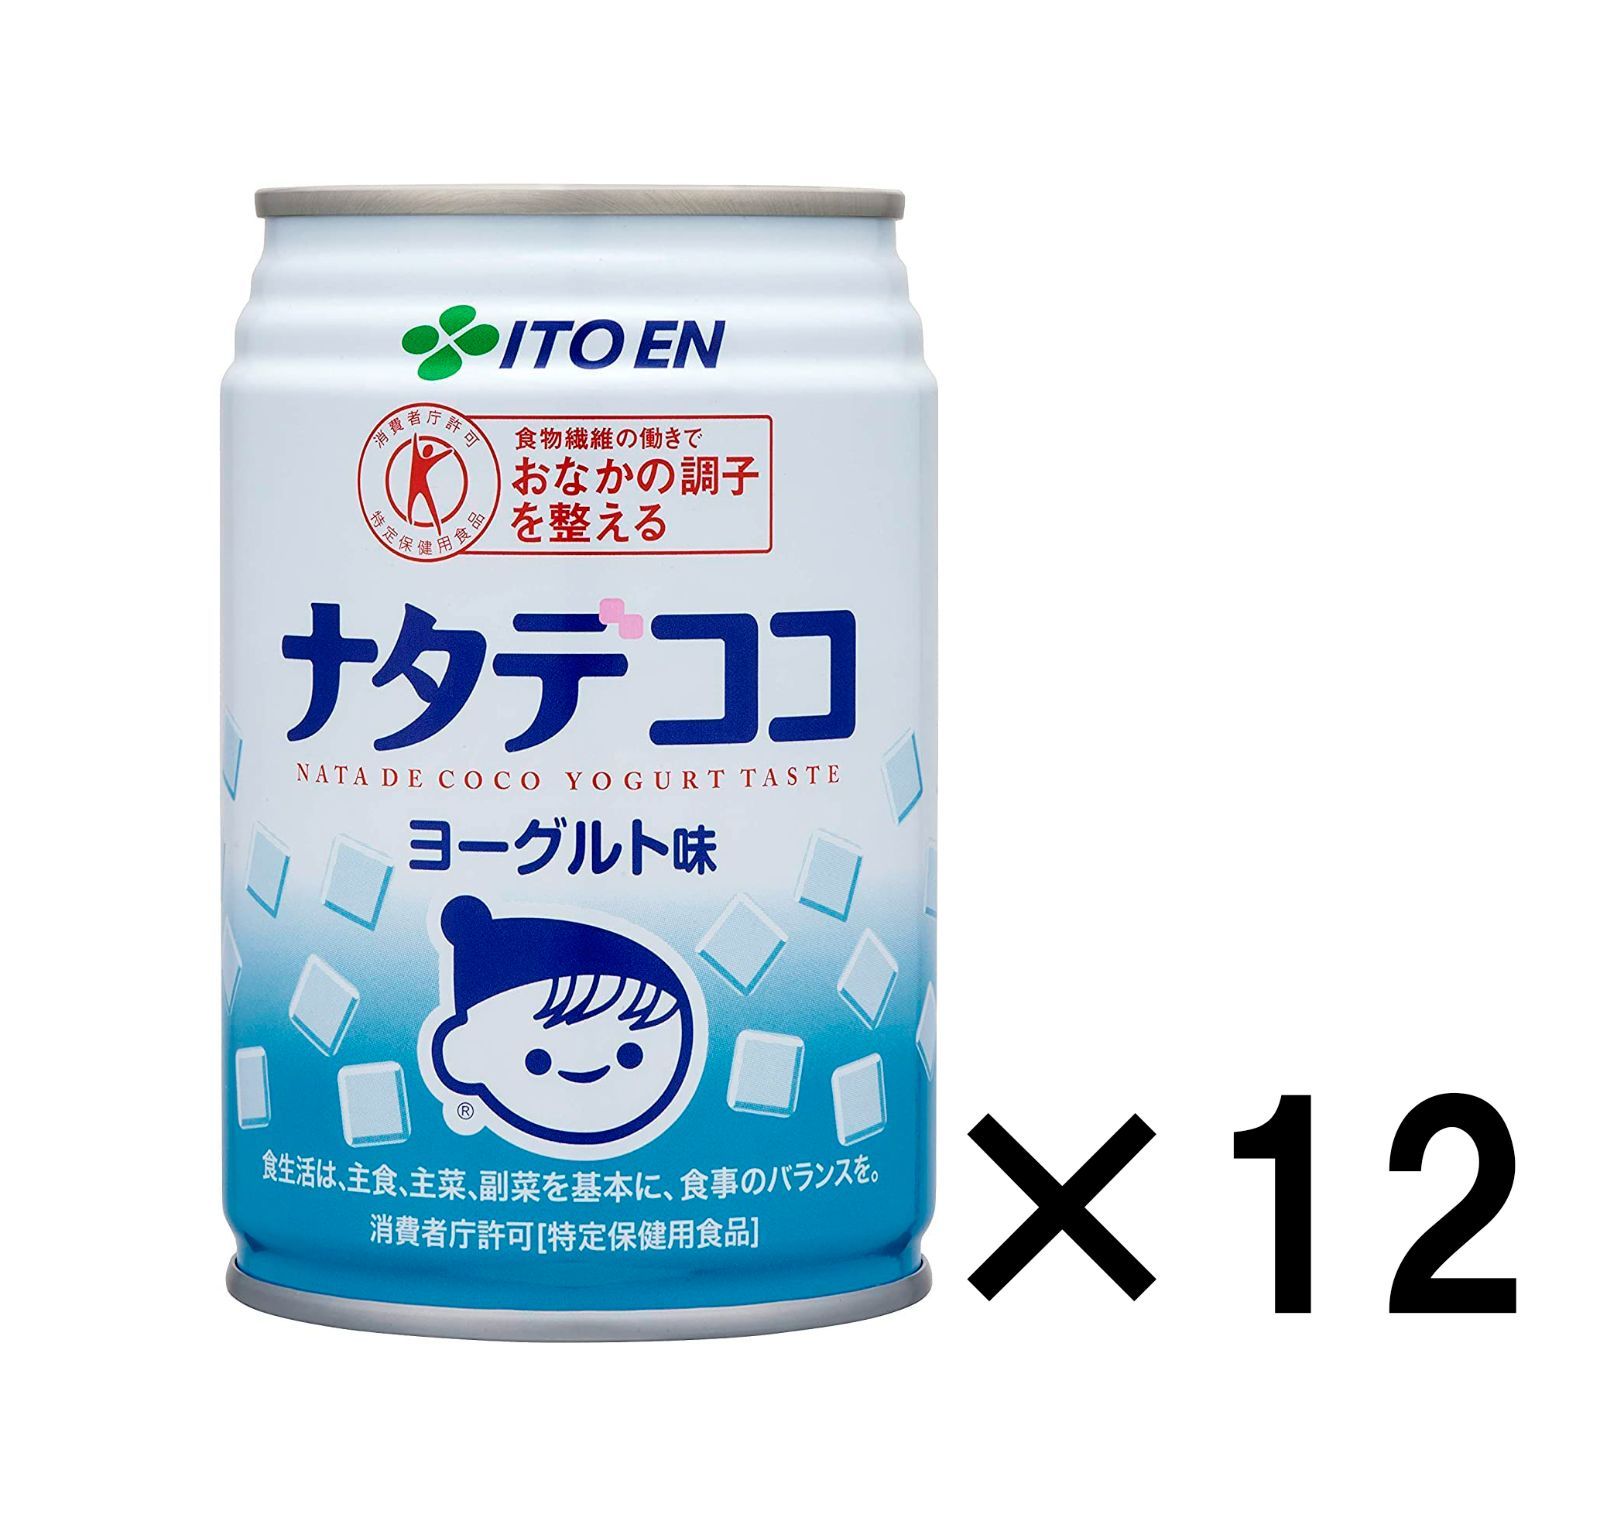 [トクホ]伊藤園 ナタデココ ヨーグルト味 (缶) 280g×12缶セット